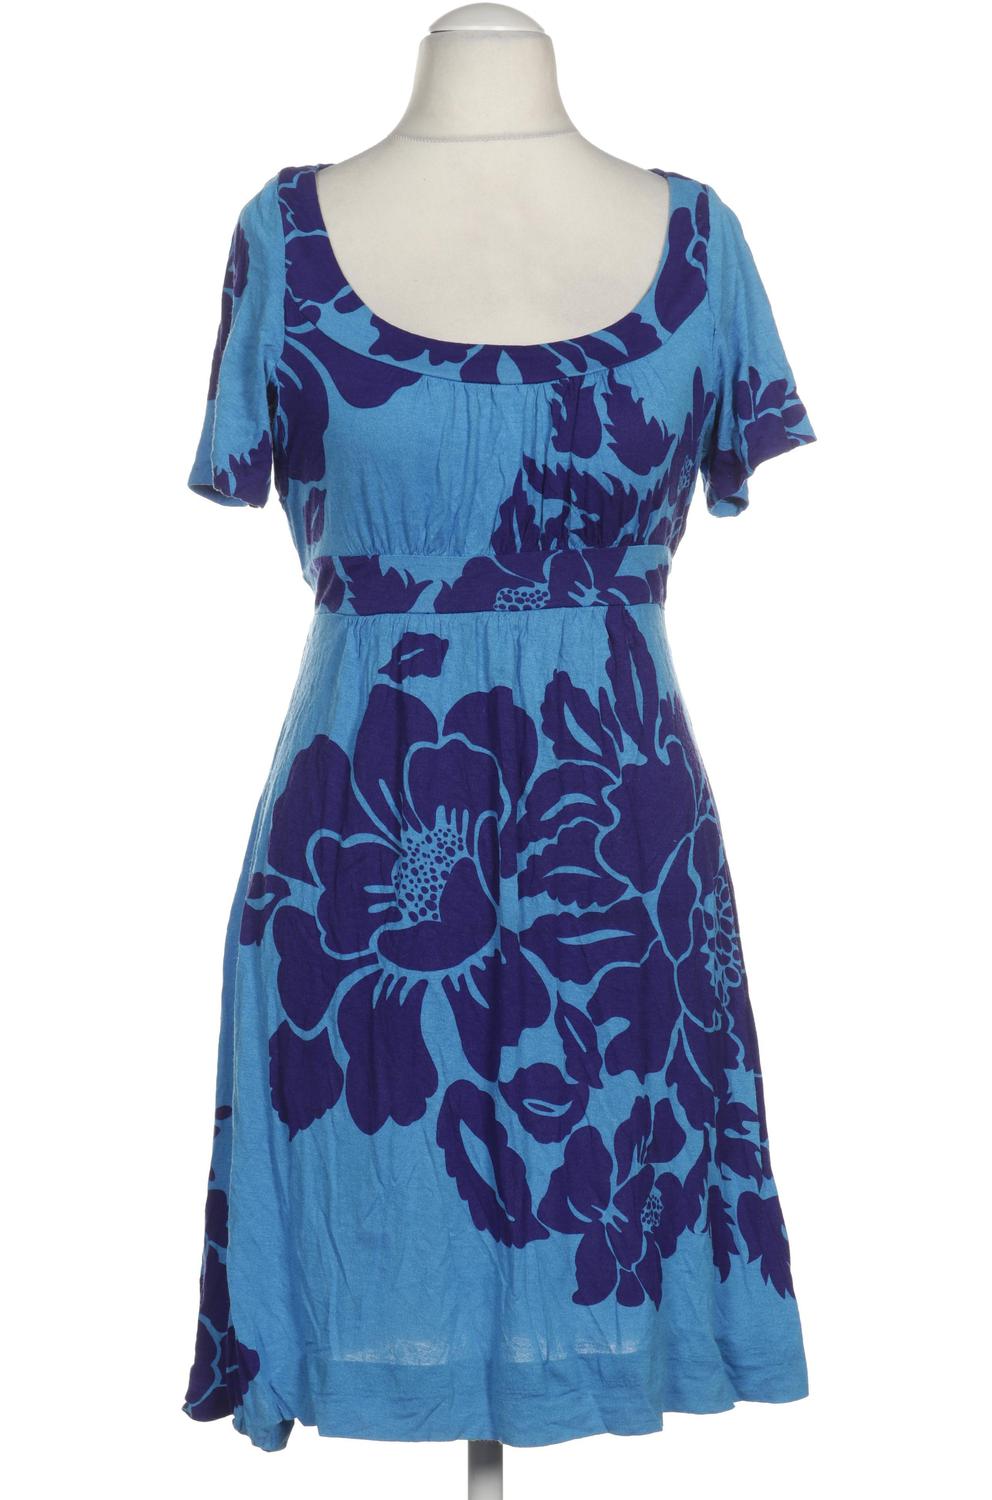 Next Damen Kleid UK 14 Second Hand kaufen | ubup